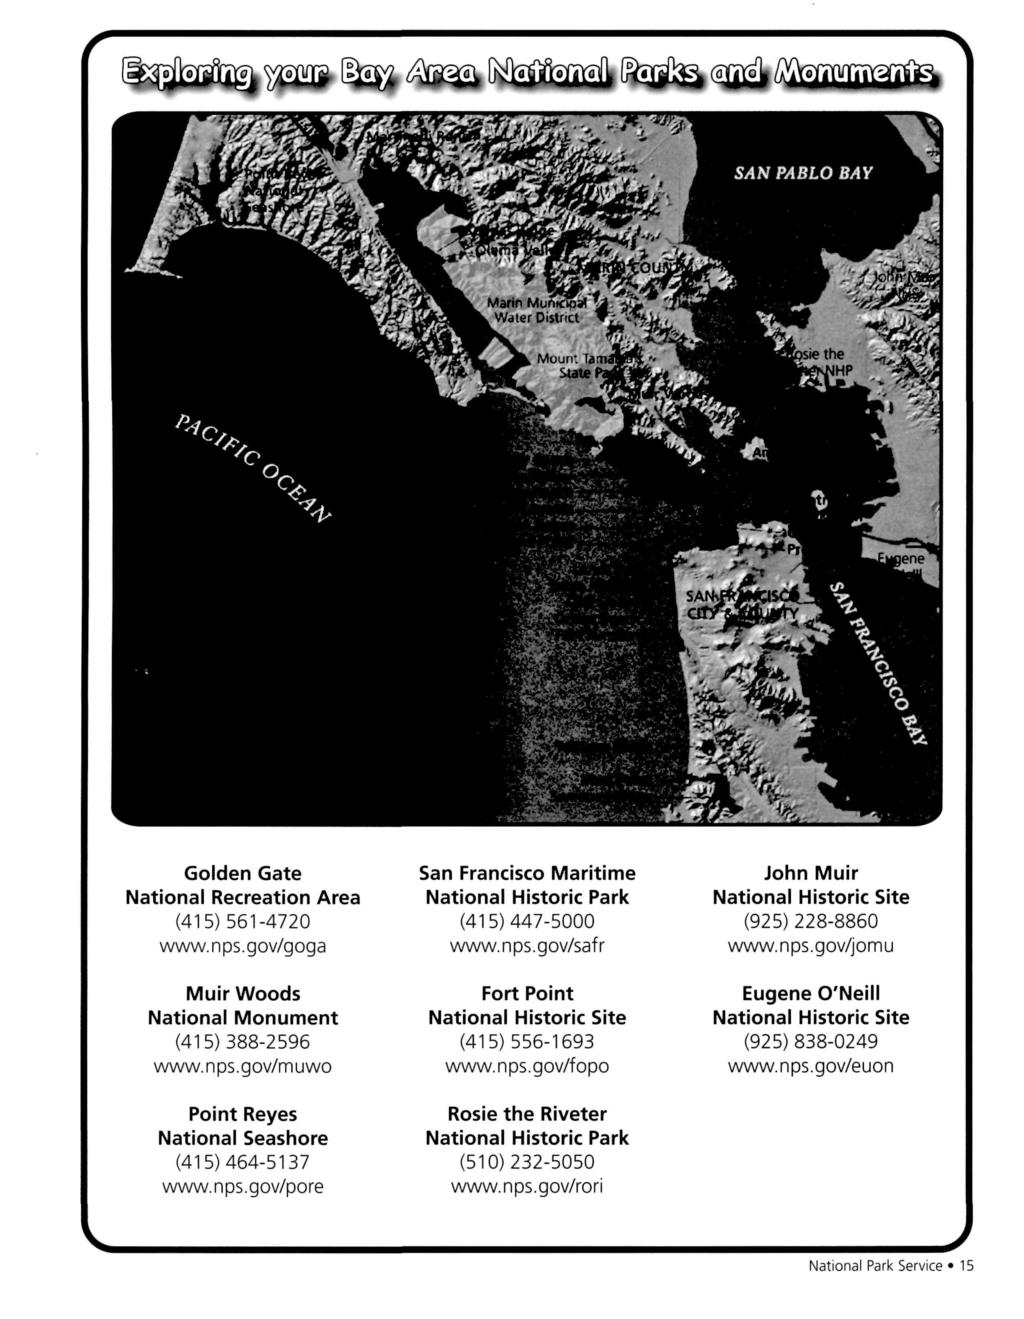 ( ^ o j ^ i ^ m i ^ H]g^ /vayr^lr^^ Golden Gate National Recreation Area (415)561-4720 www.nps.gov/goga Muir Woods National Monument (415)388-2596 www.nps.gov/muwo Point Reyes National Seashore (415)464-5137 www.